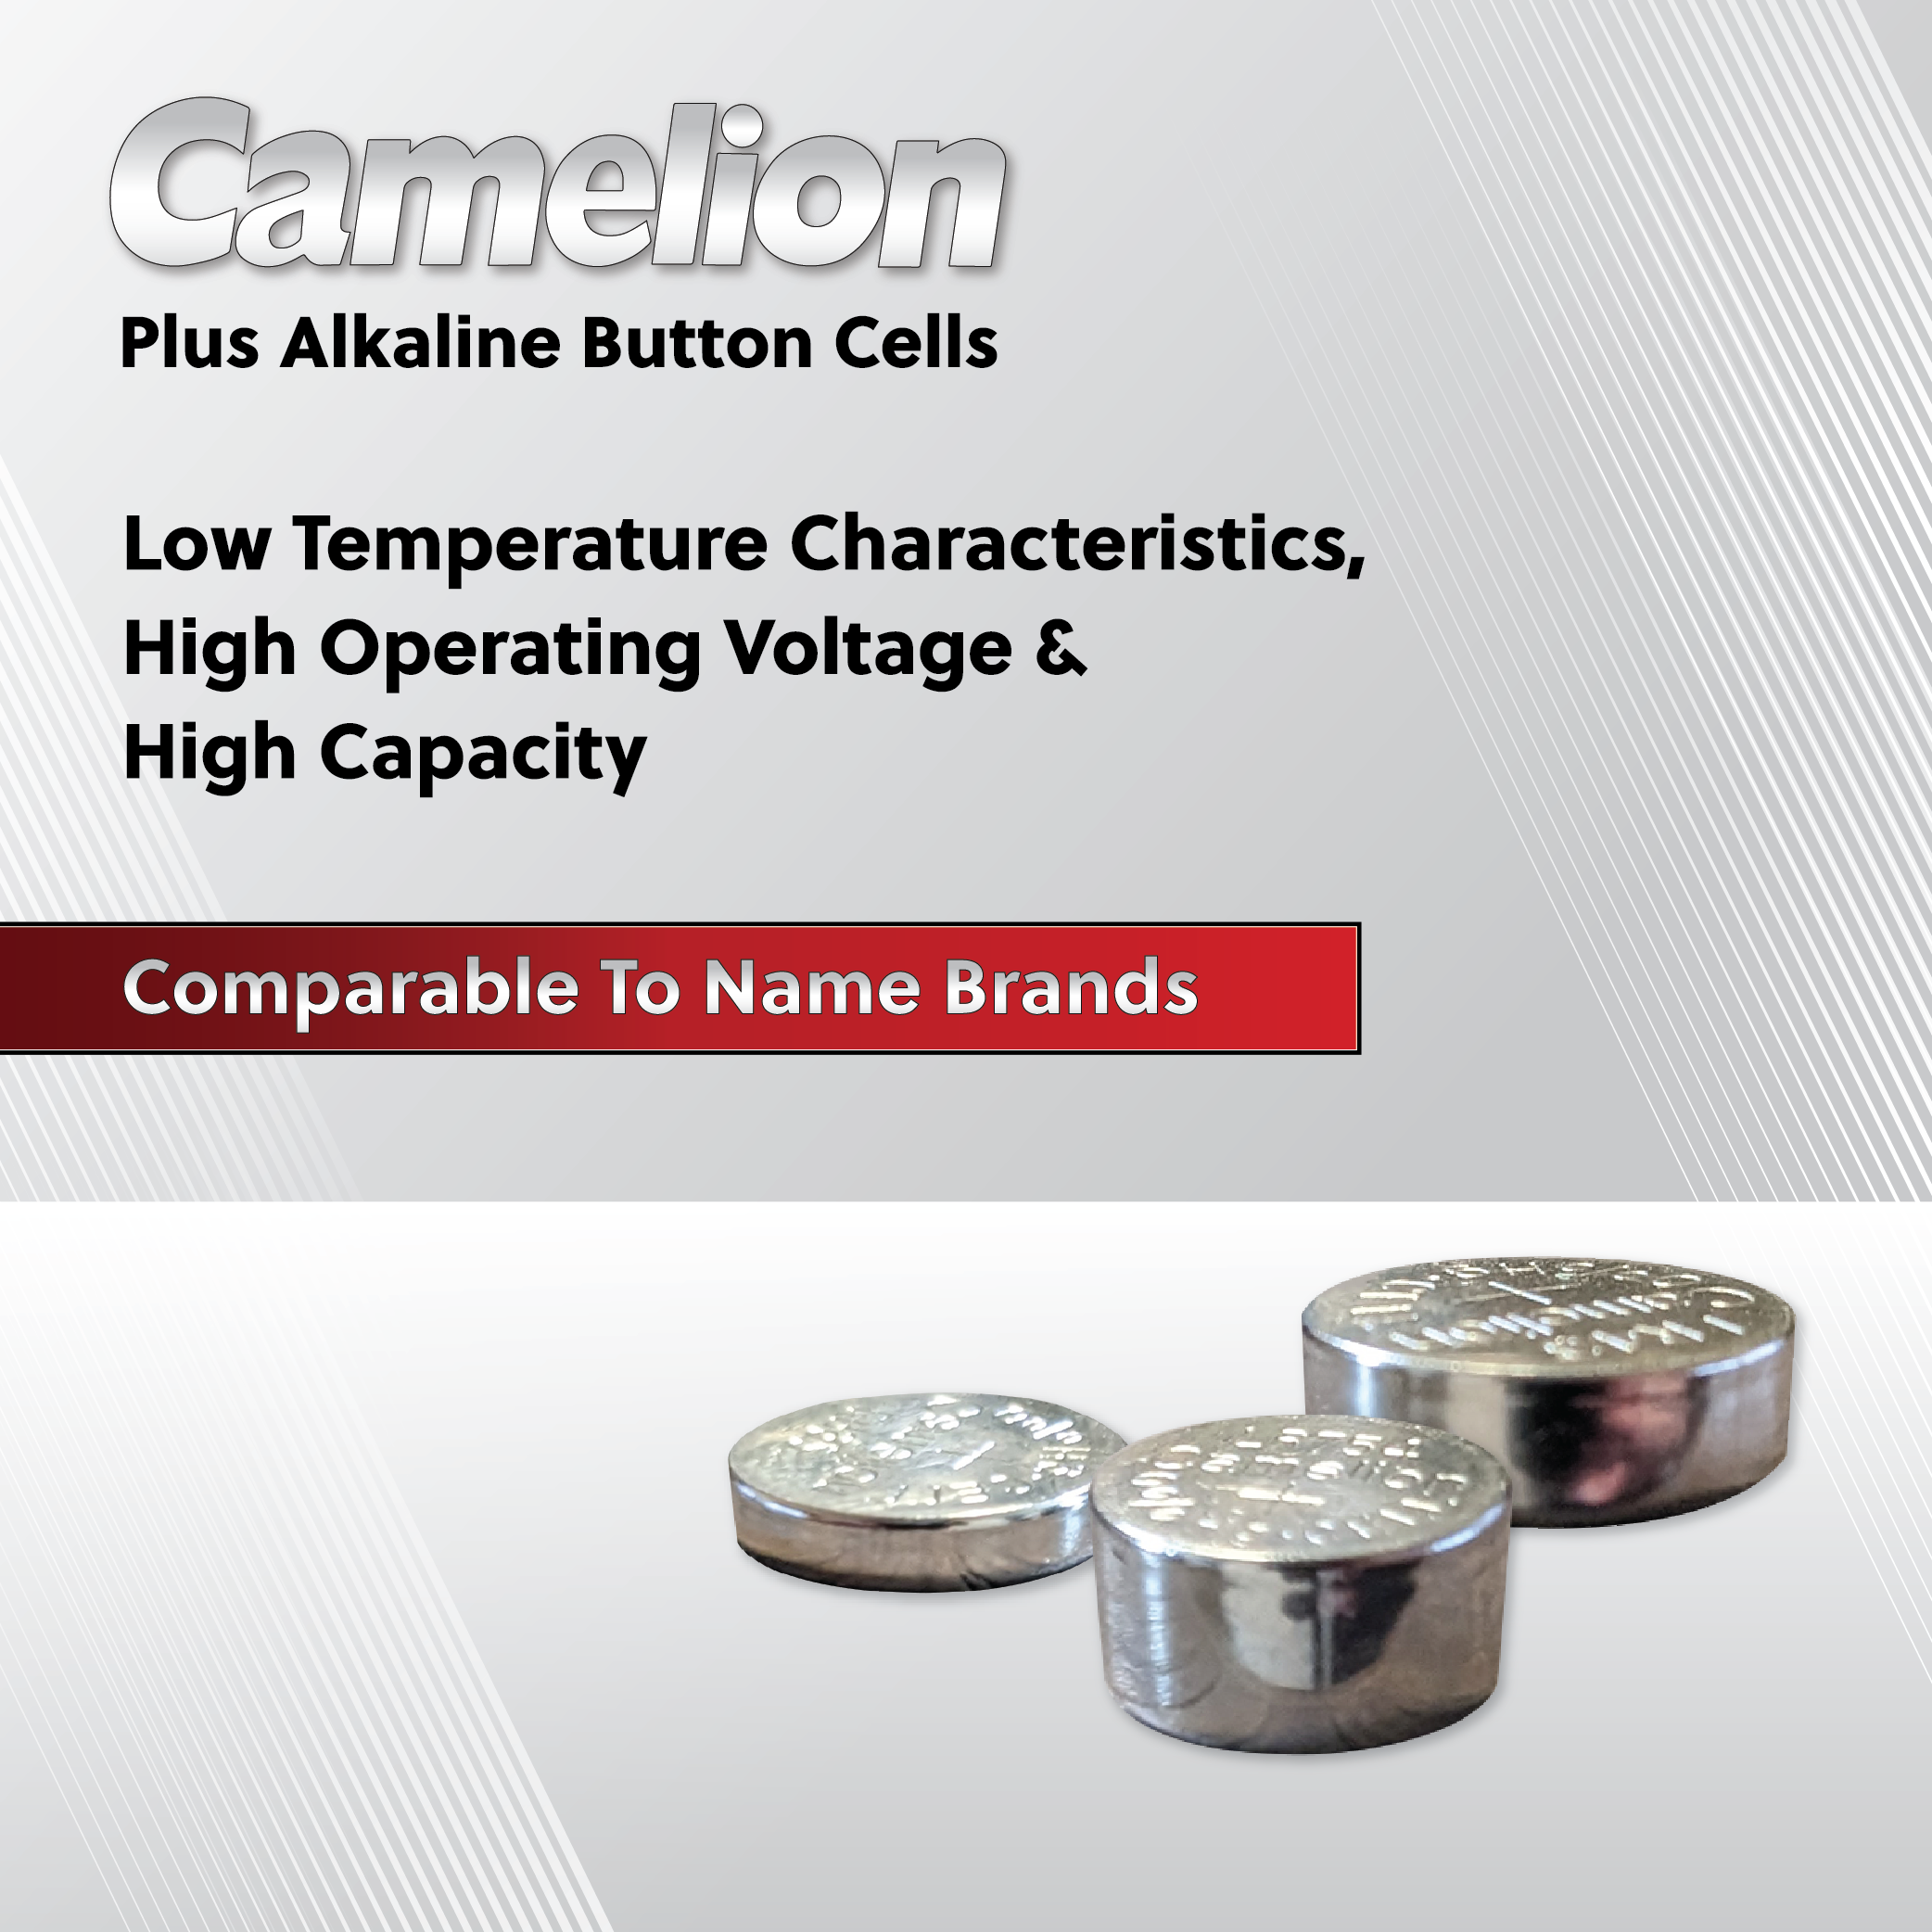 Camelion AG0 / 379 / LR521 1.5V Coin Cell Battery Pack of 10